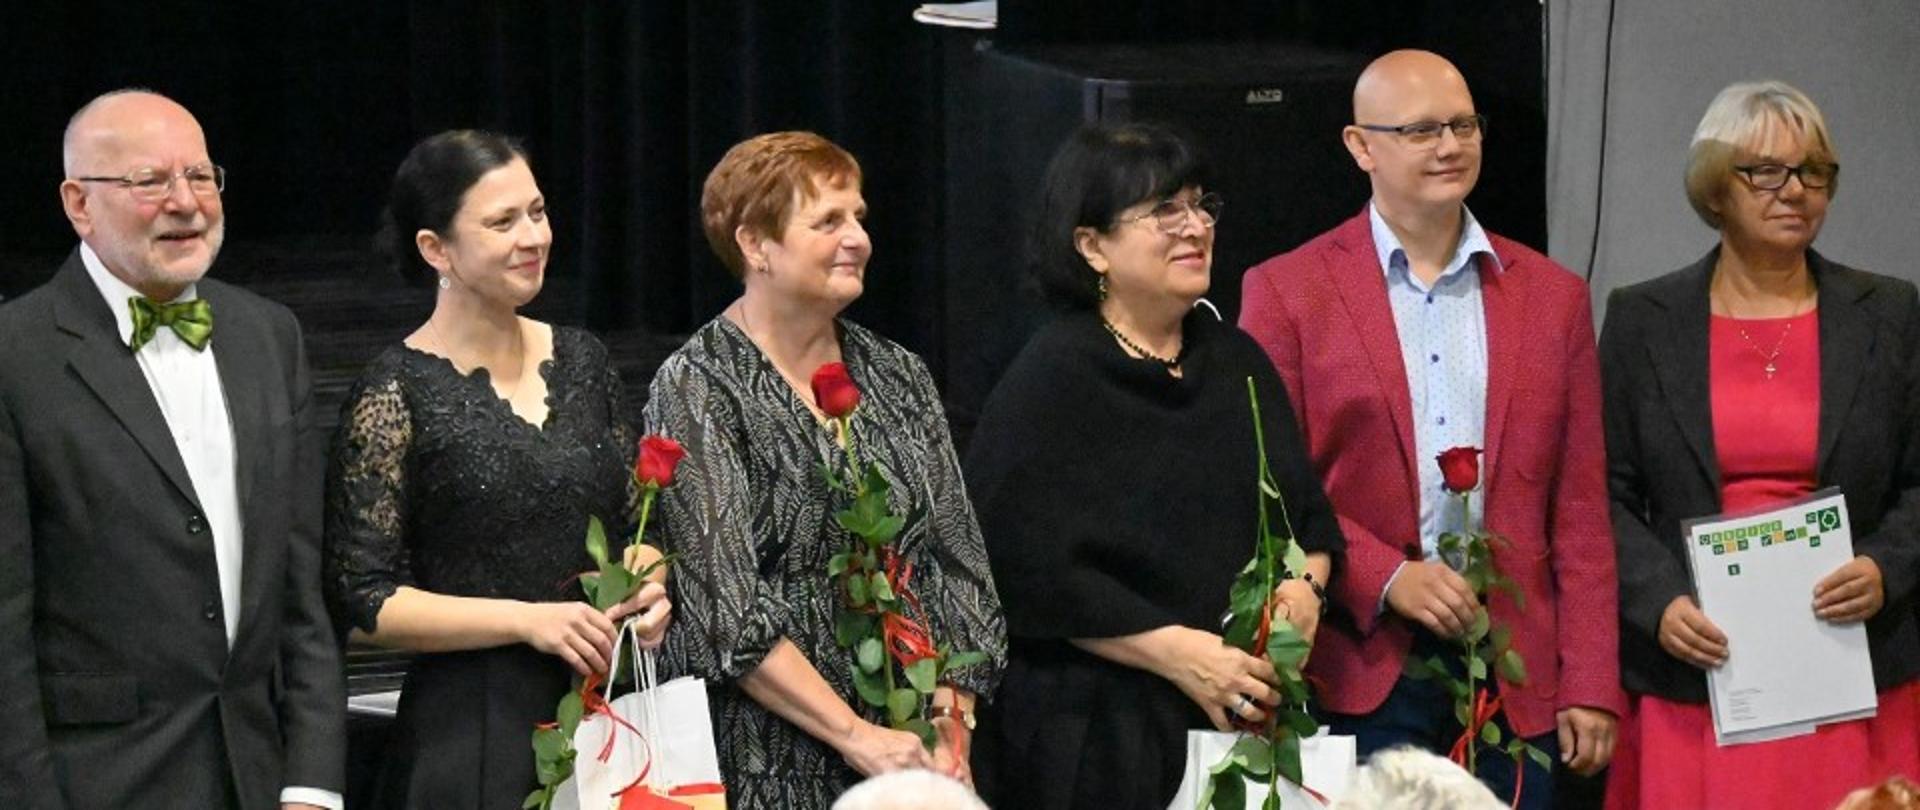 Zdjęcie kolorowe. Sześć osób, cztery z nich trzymają czerwone róże